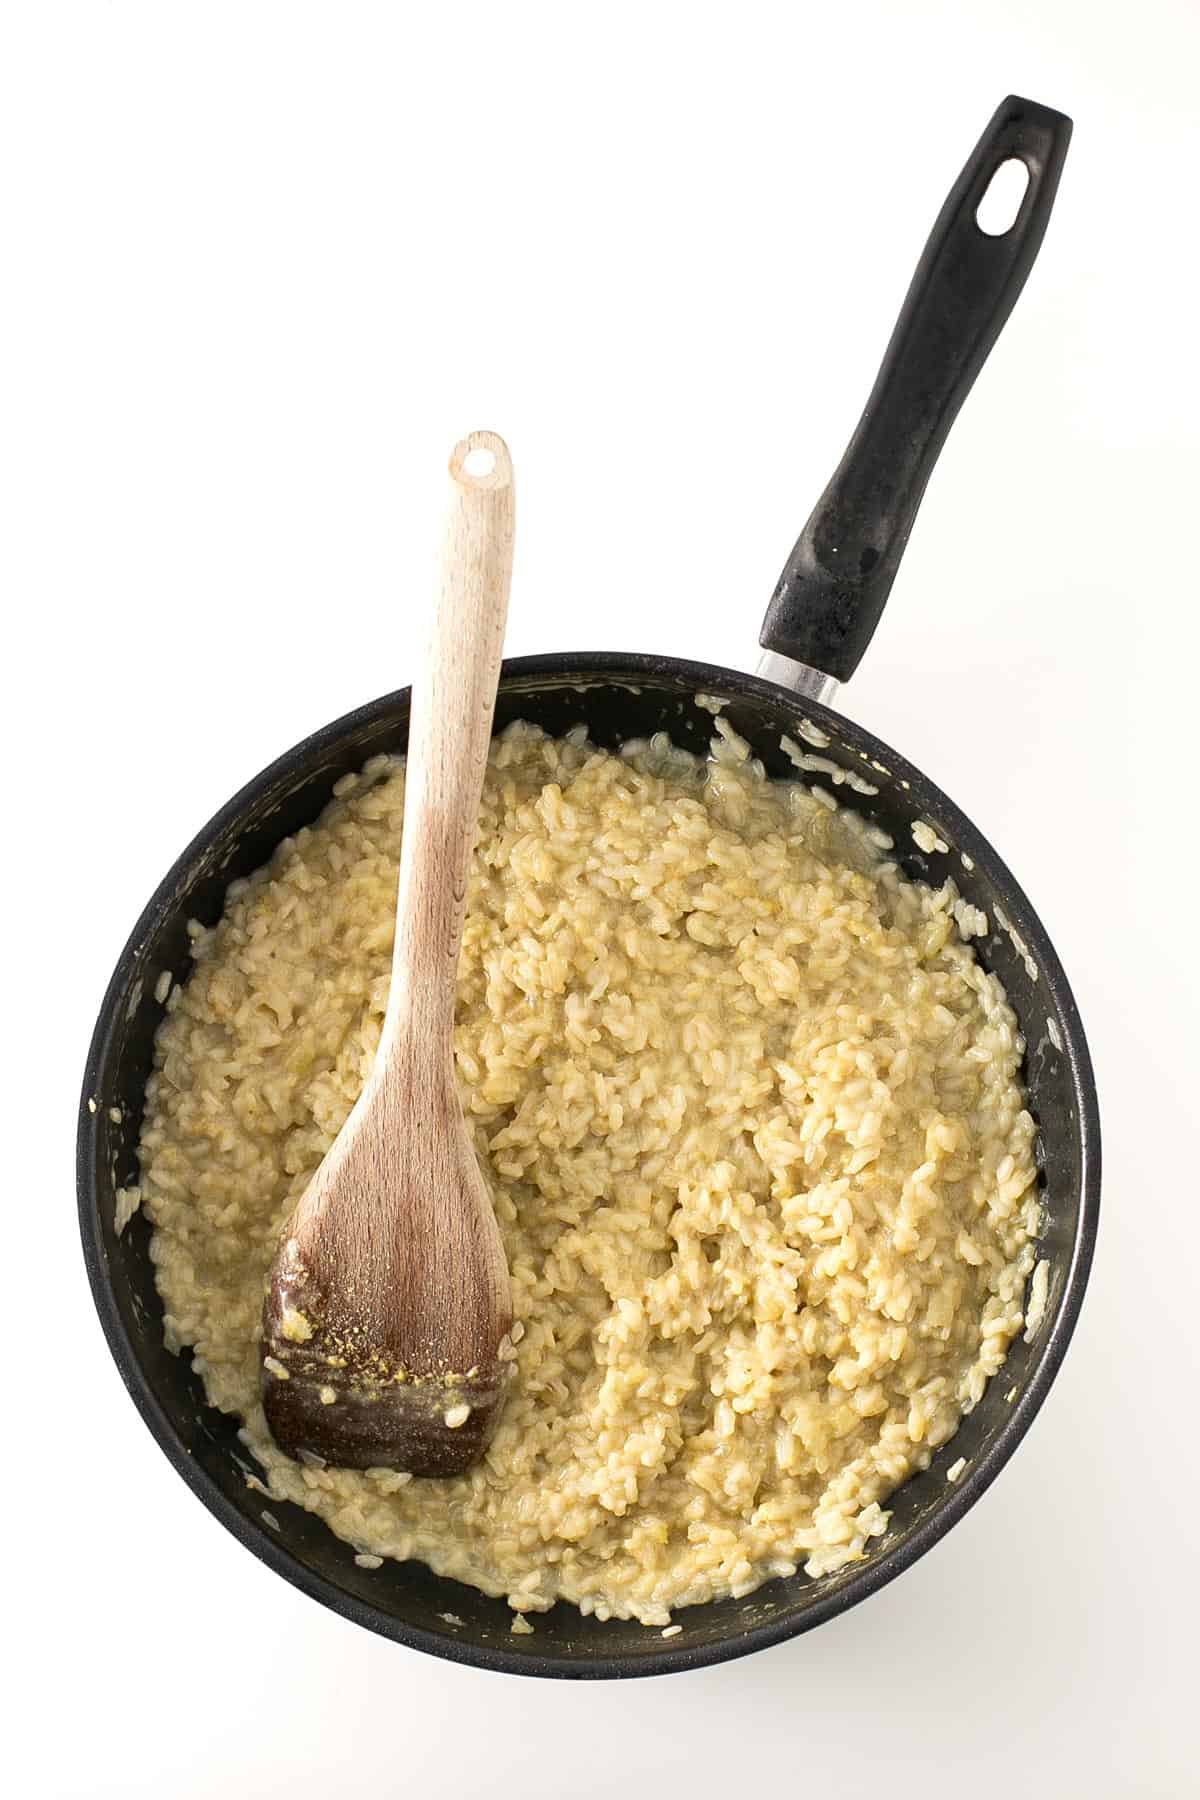 Risotto Vegano de Champiñones. - Es fácil preparar un risotto vegano y el de champiñones es una de las recetas más populares. Esta versión no tiene colesterol, es baja en grasa y más sana.